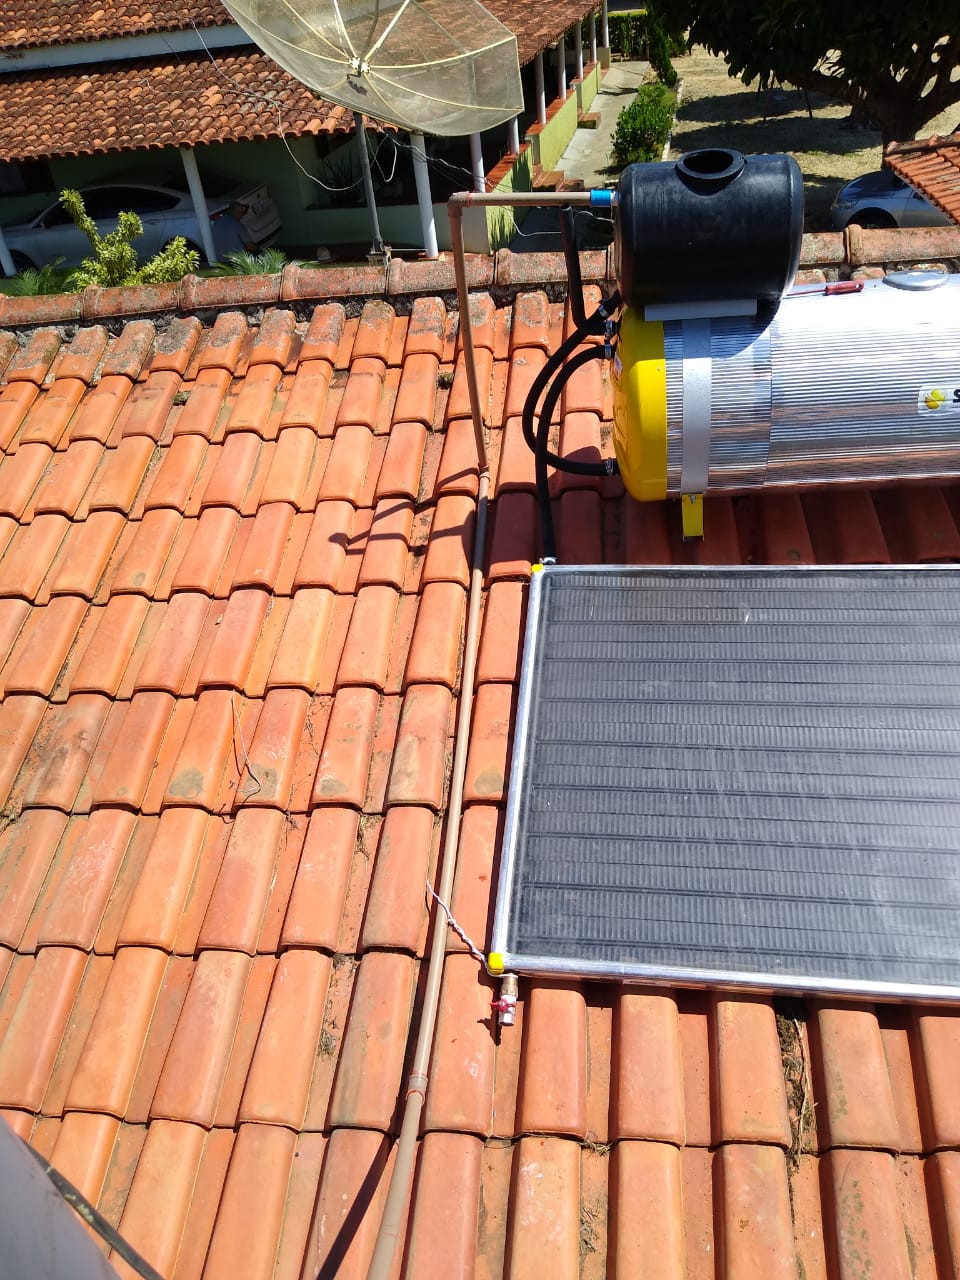 Sistema Fotovoltaico - Elias Fausto - SP